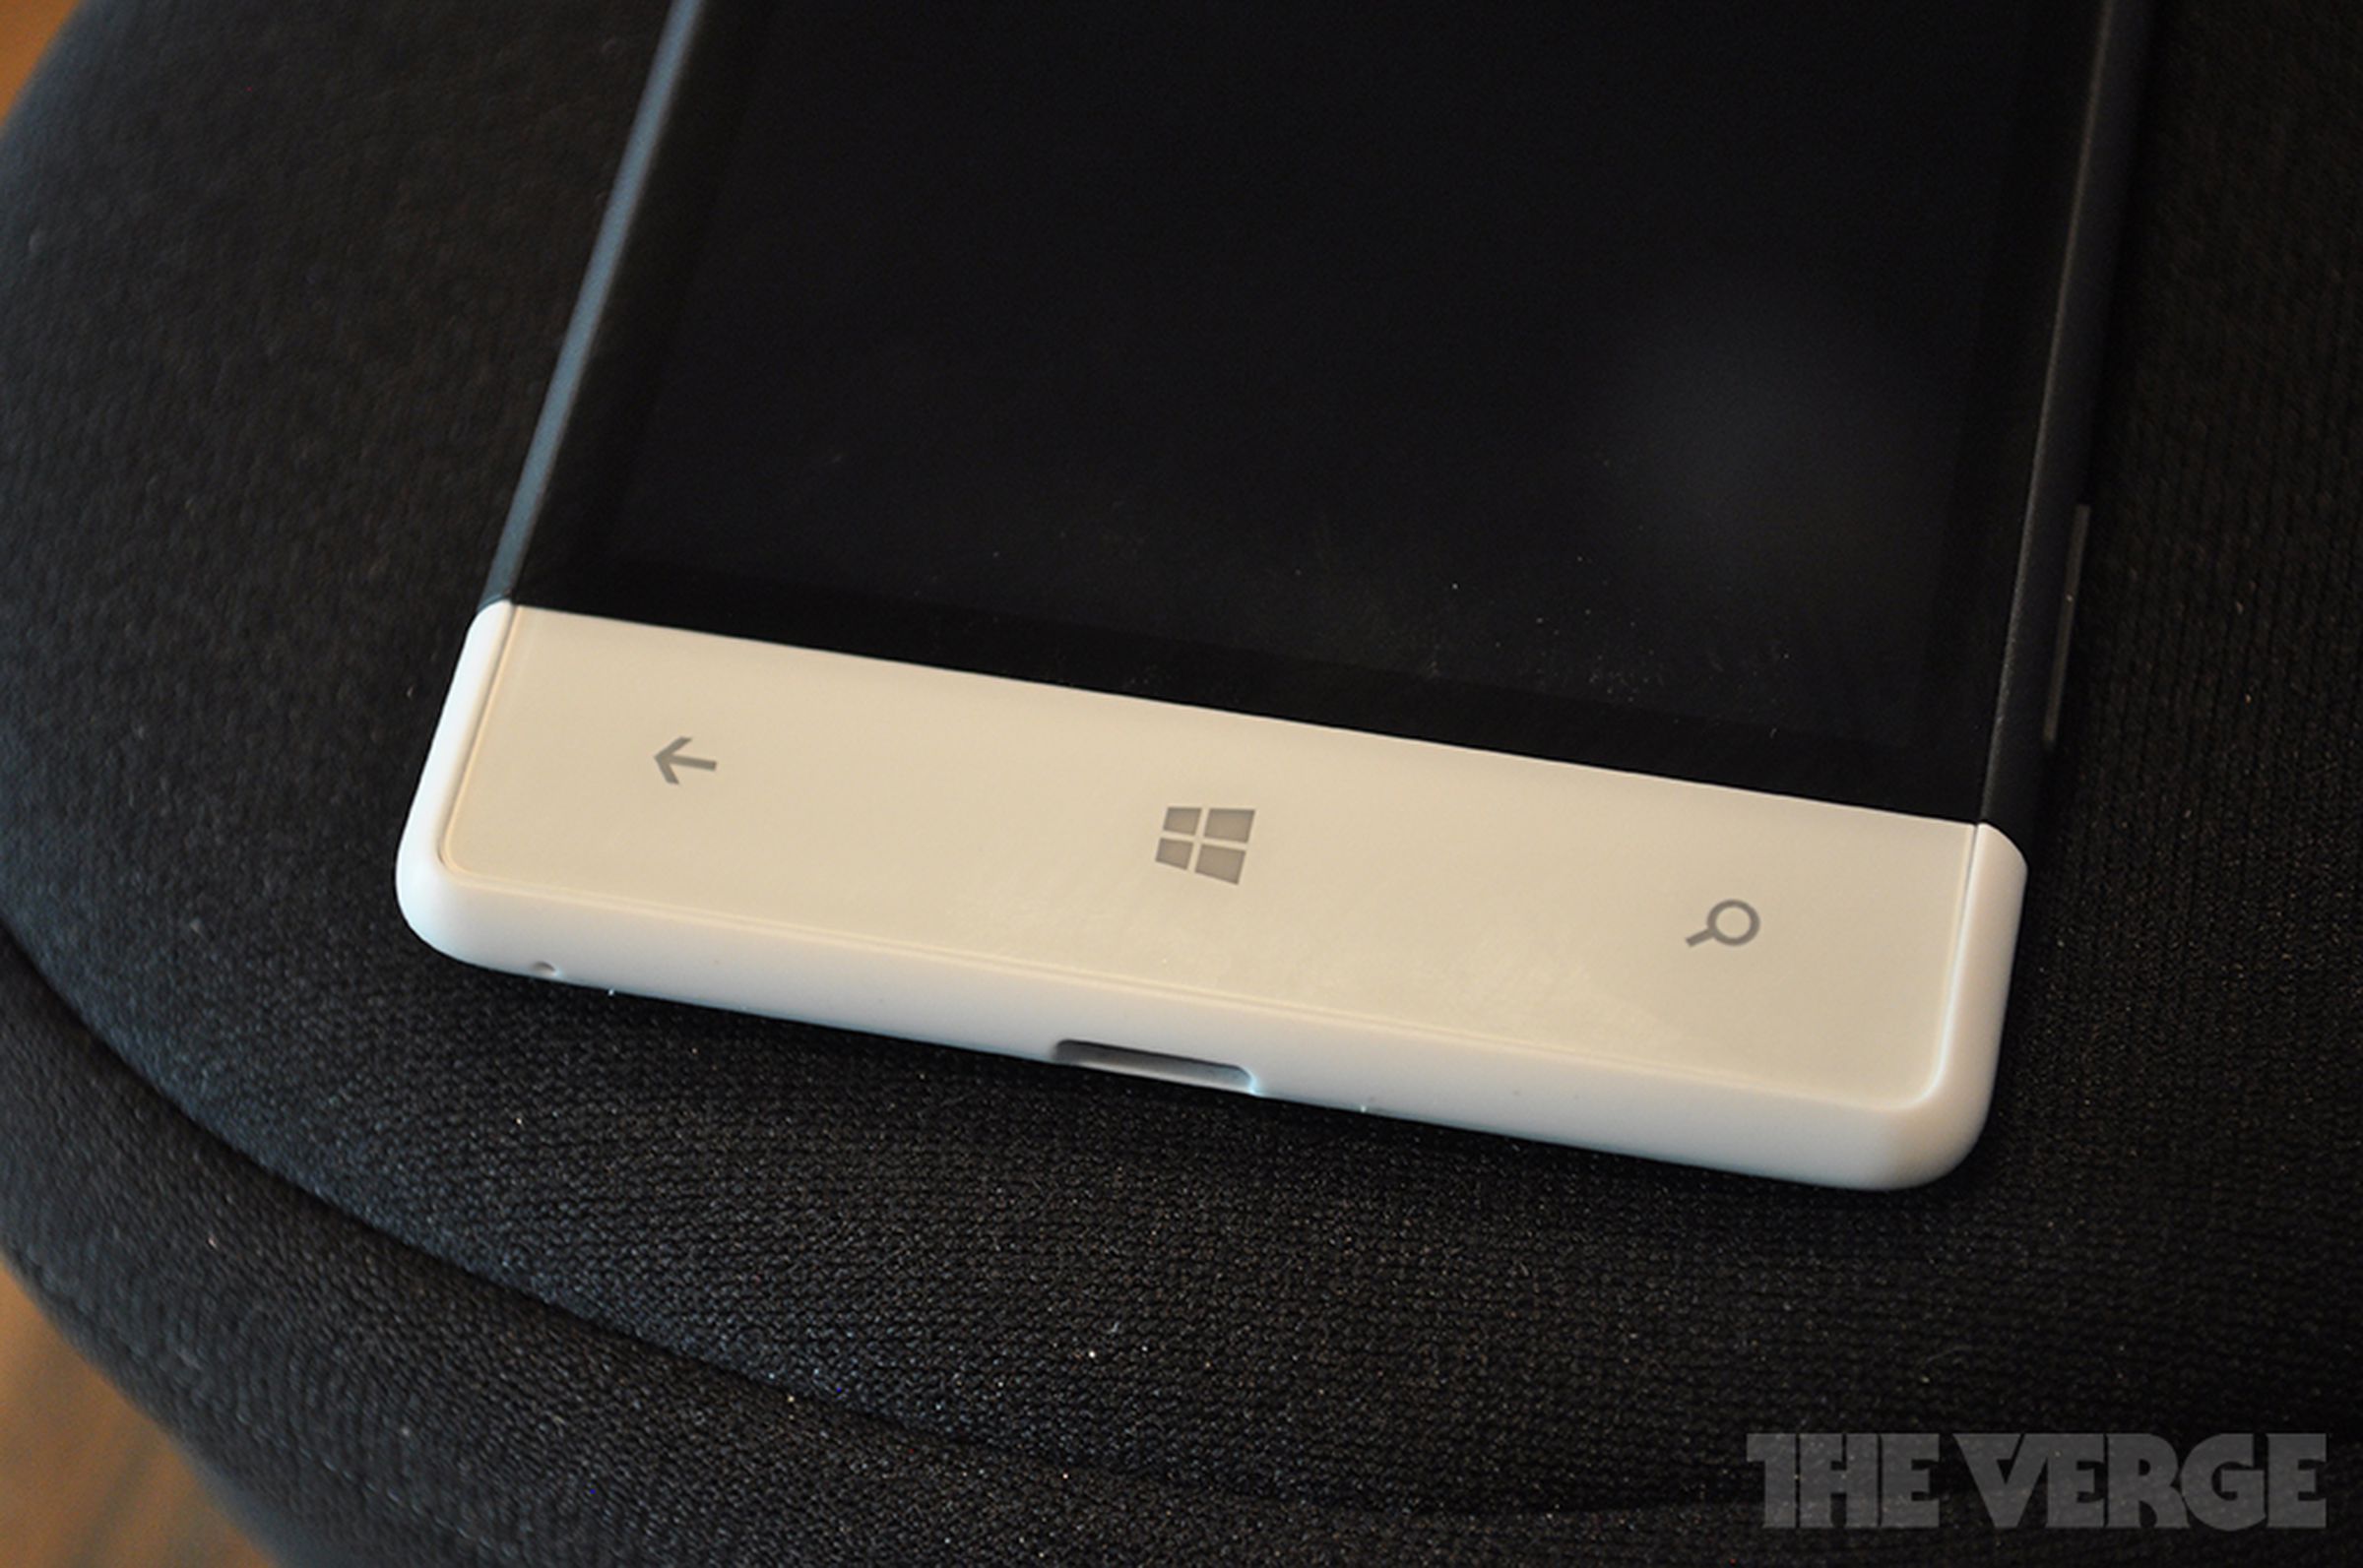 Windows Phone 8S hands-on photos